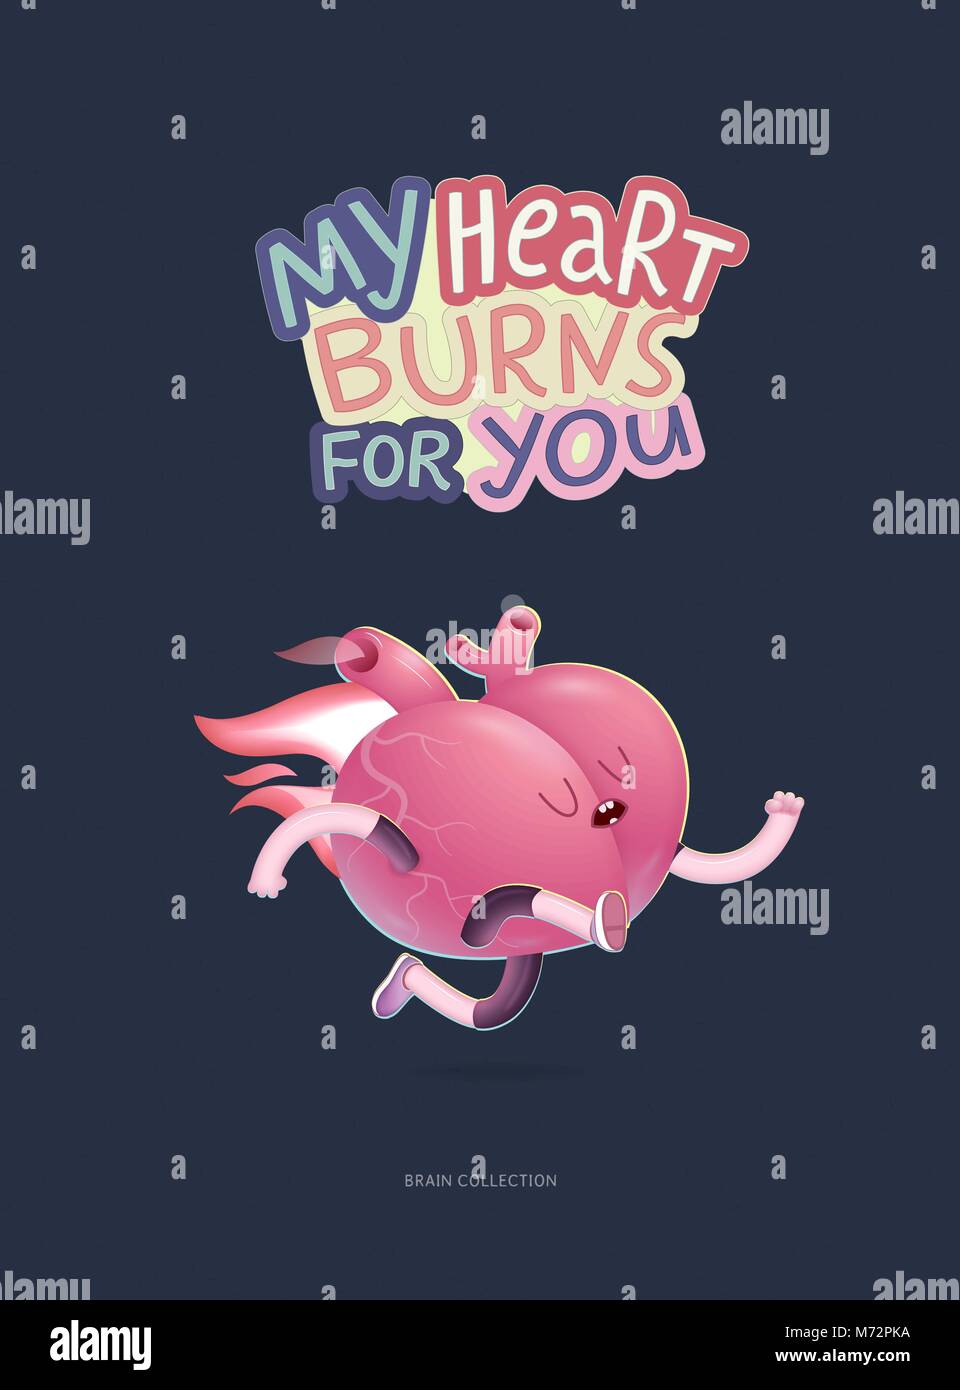 Mon coeur brûle pour vous - un vecteur cartoon affiche illustrée d'un coeur brûlant avec lettrage. Une partie du cerveau collection. Illustration de Vecteur